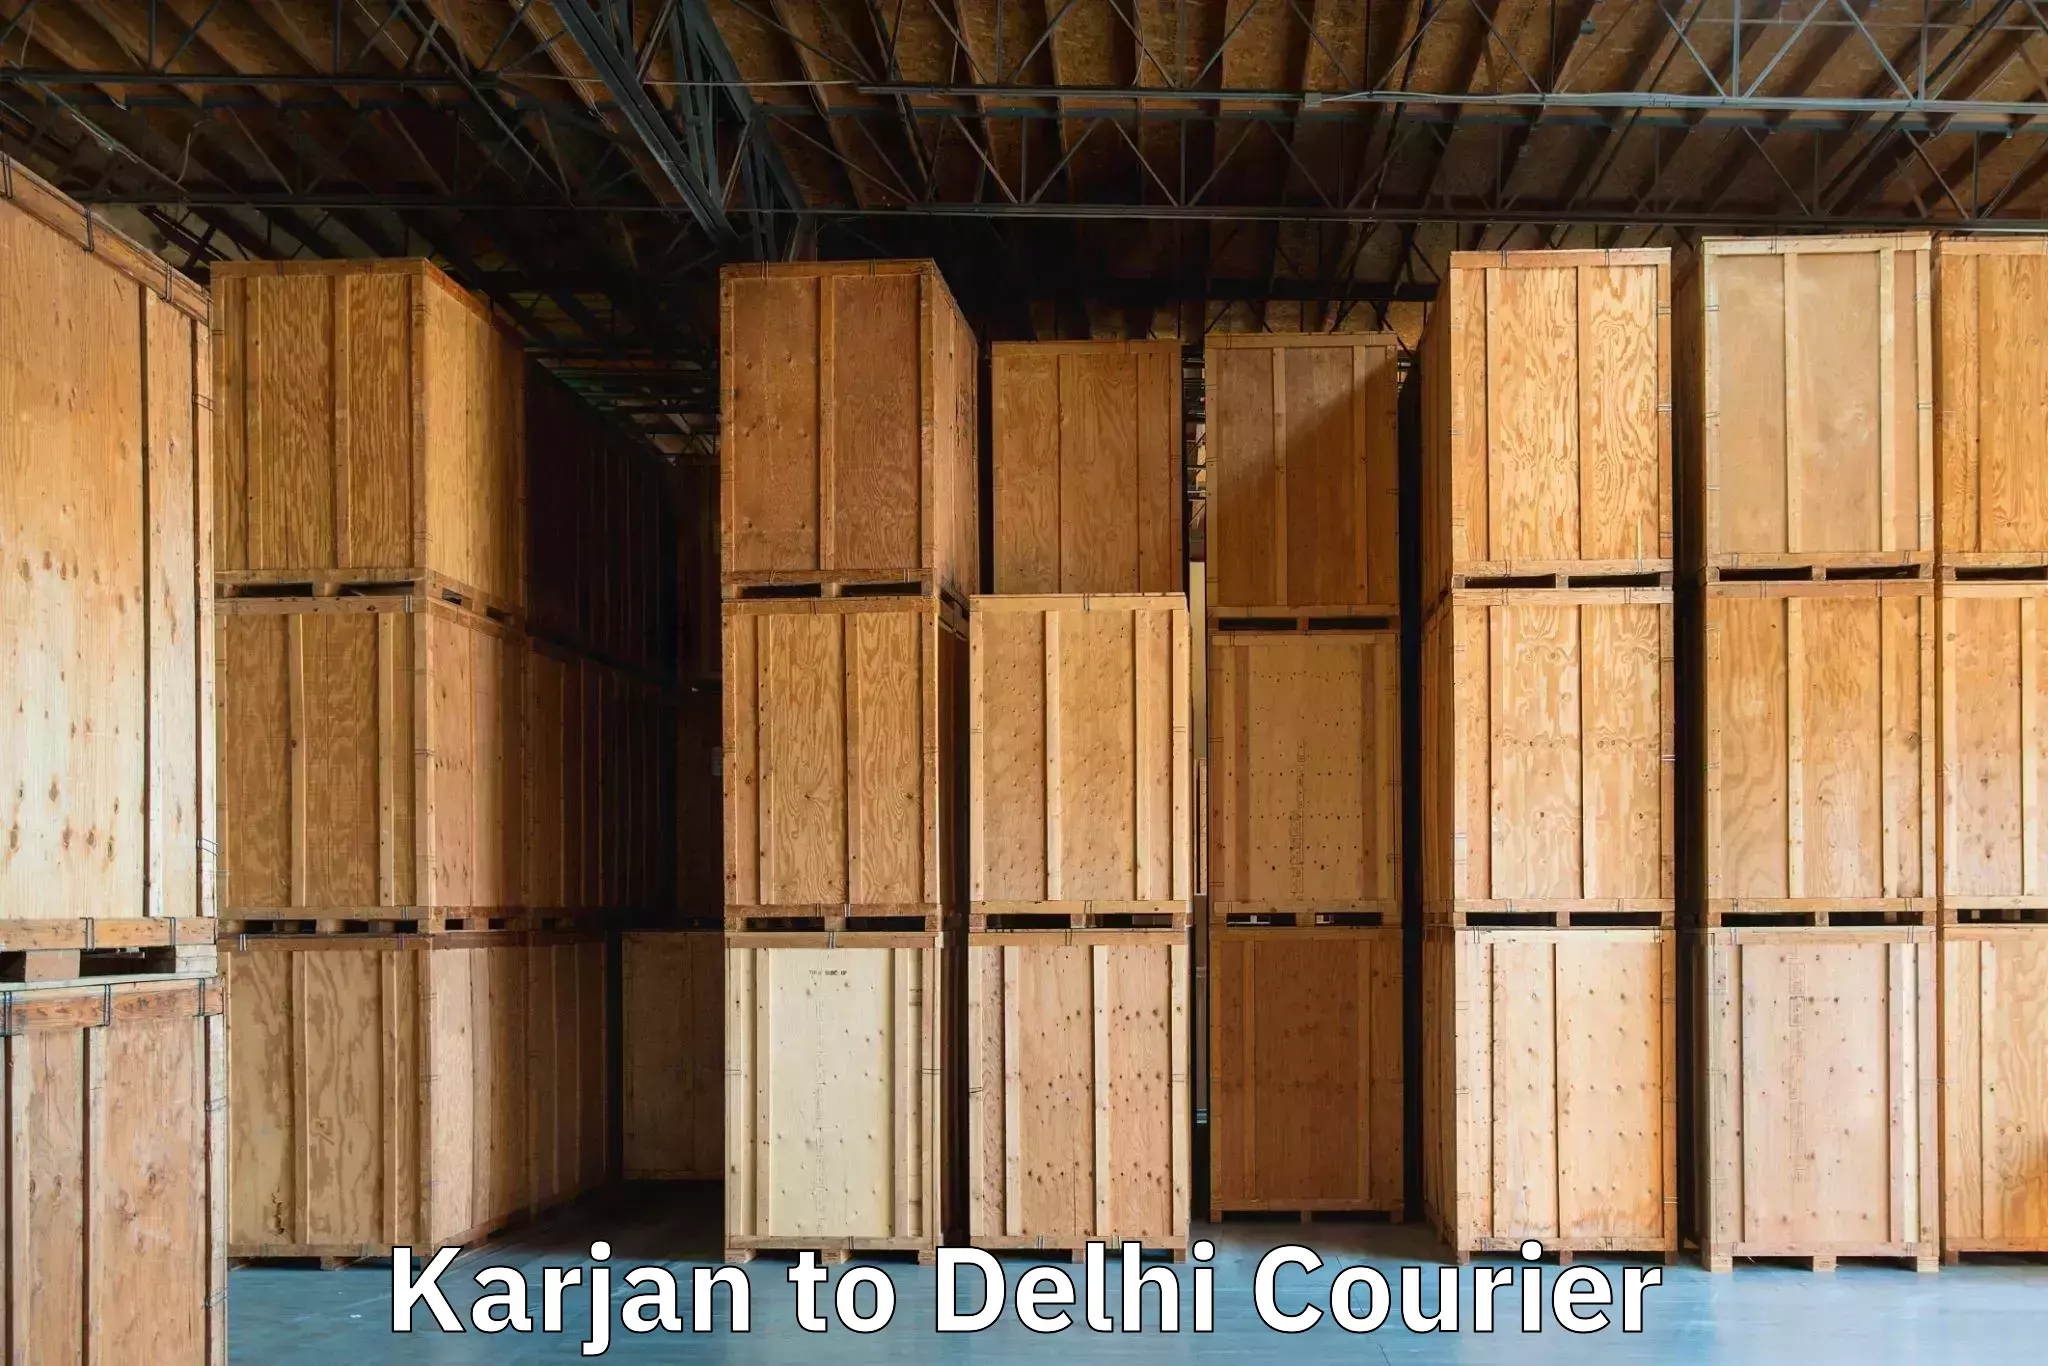 Emergency baggage service Karjan to East Delhi